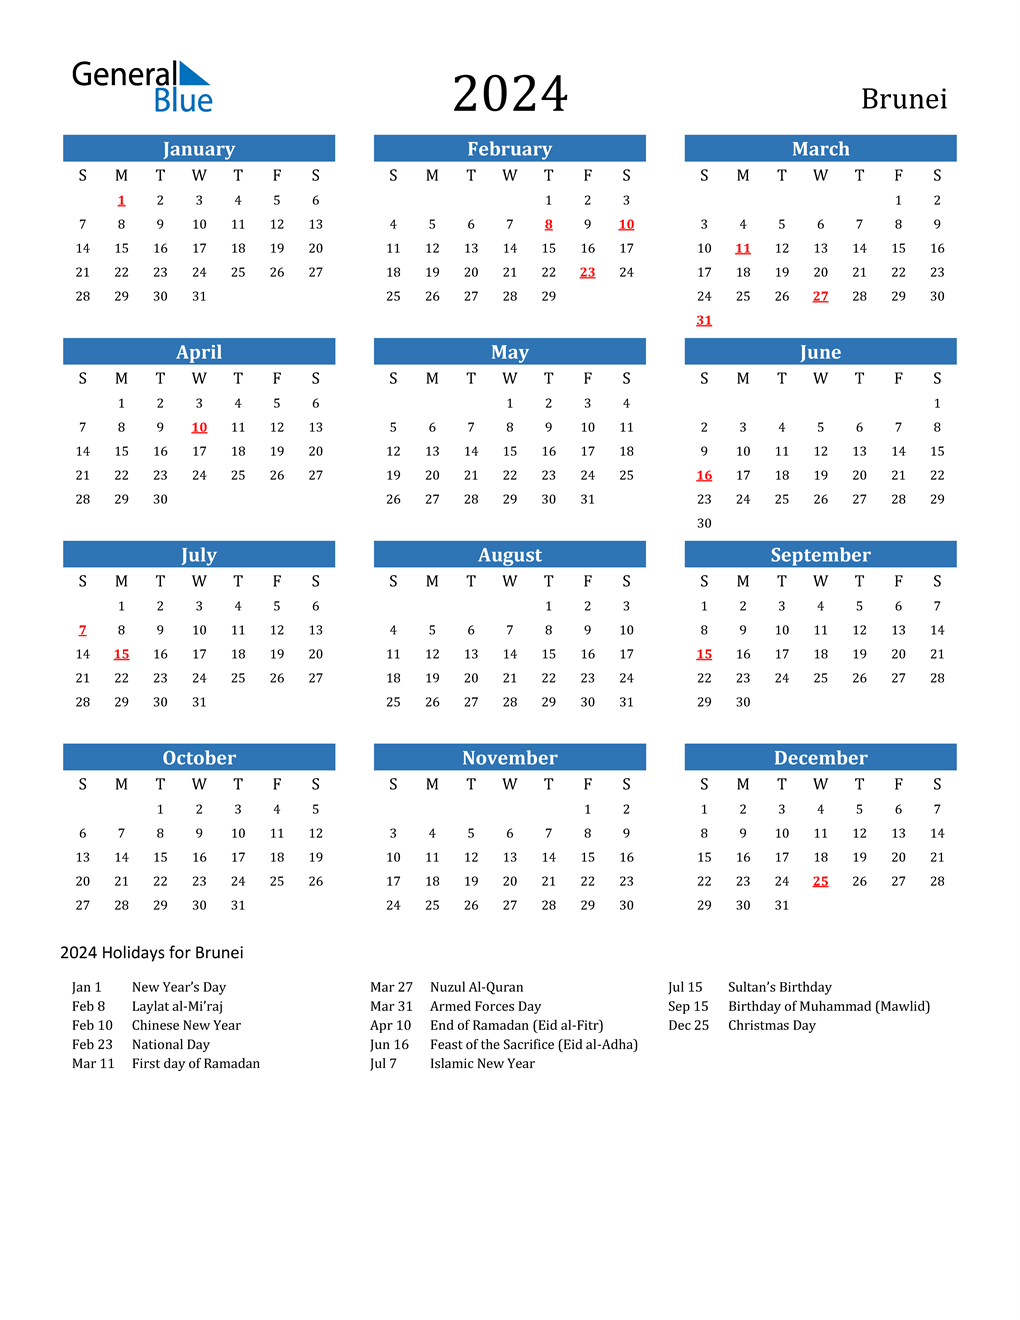 Free Printable Brunei Calendar 2022 With Holidays - vrogue.co